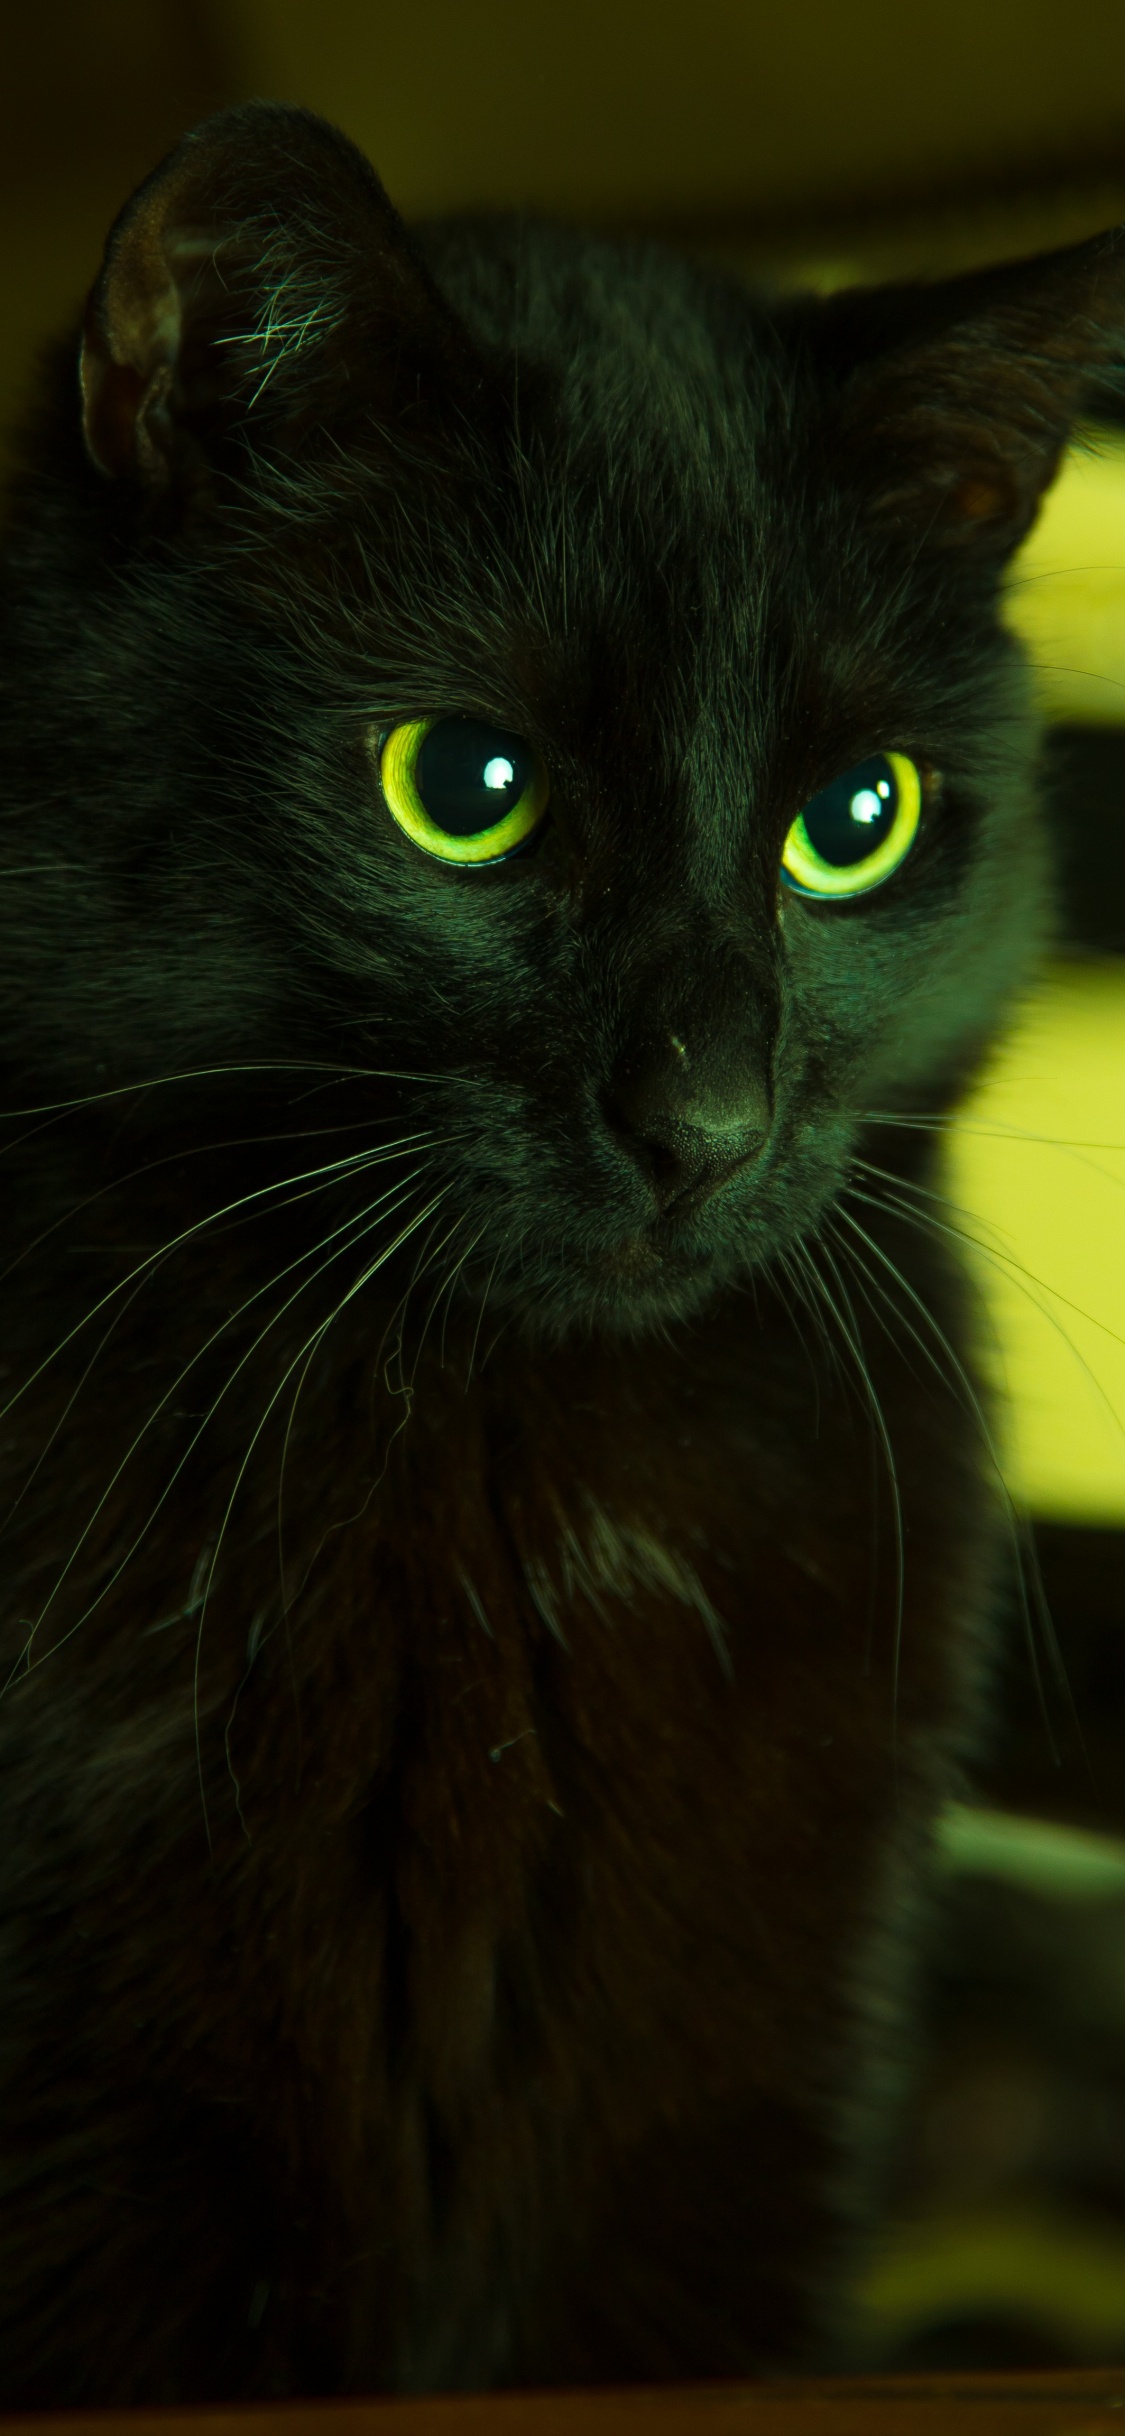 Gato Negro en Lente de Cambio de Inclinación. Wallpaper in 1125x2436 Resolution